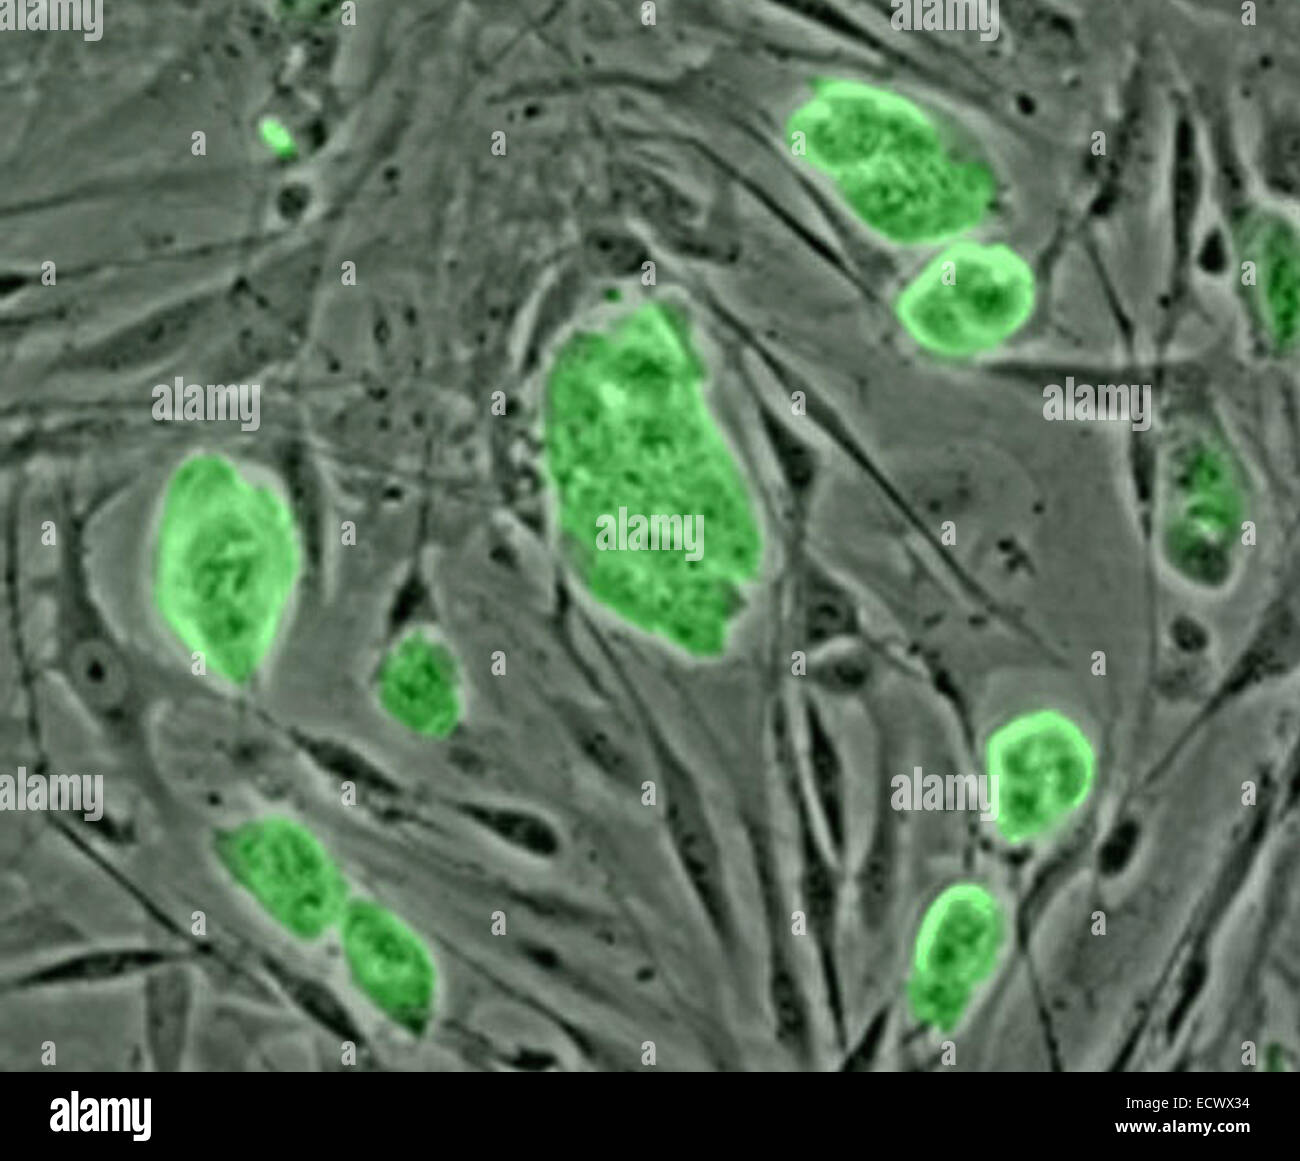 Les cellules souches embryonnaires de souris. Banque D'Images